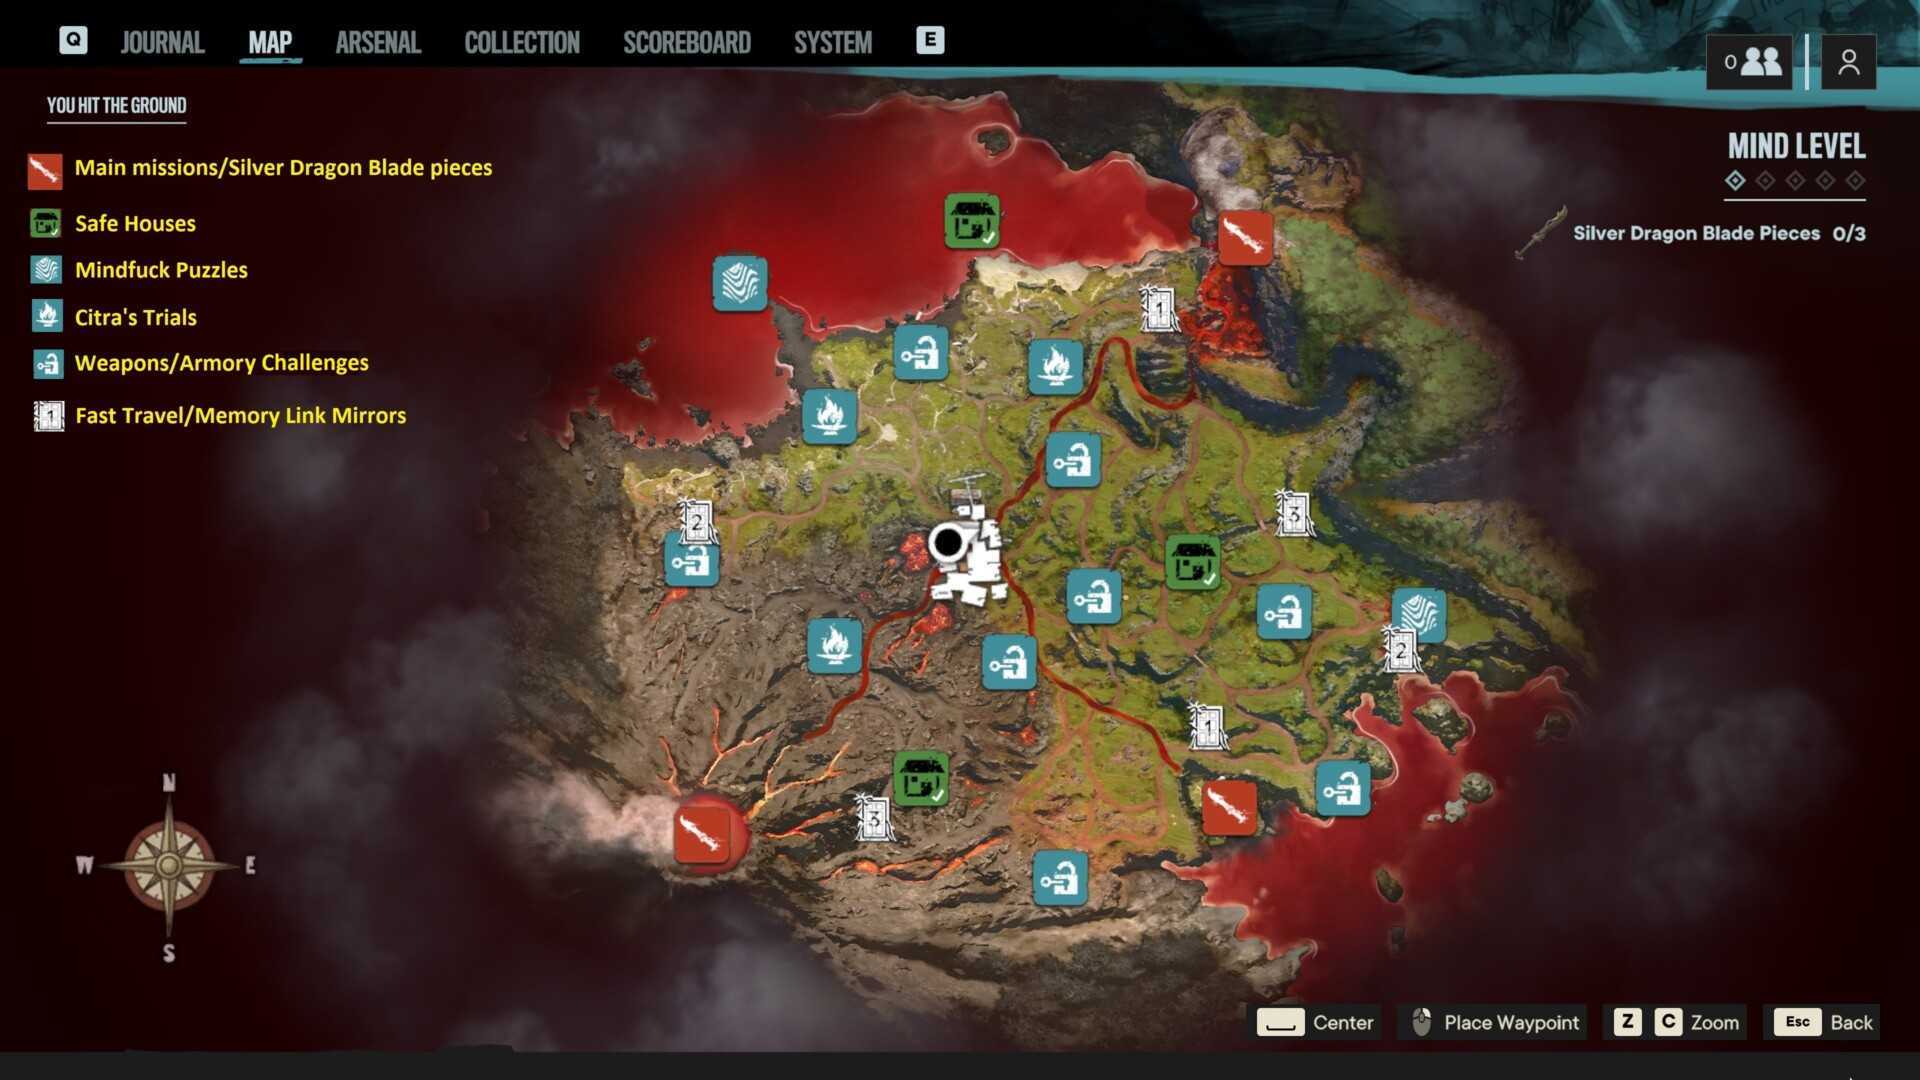 Far cry 6 интерактивная карта